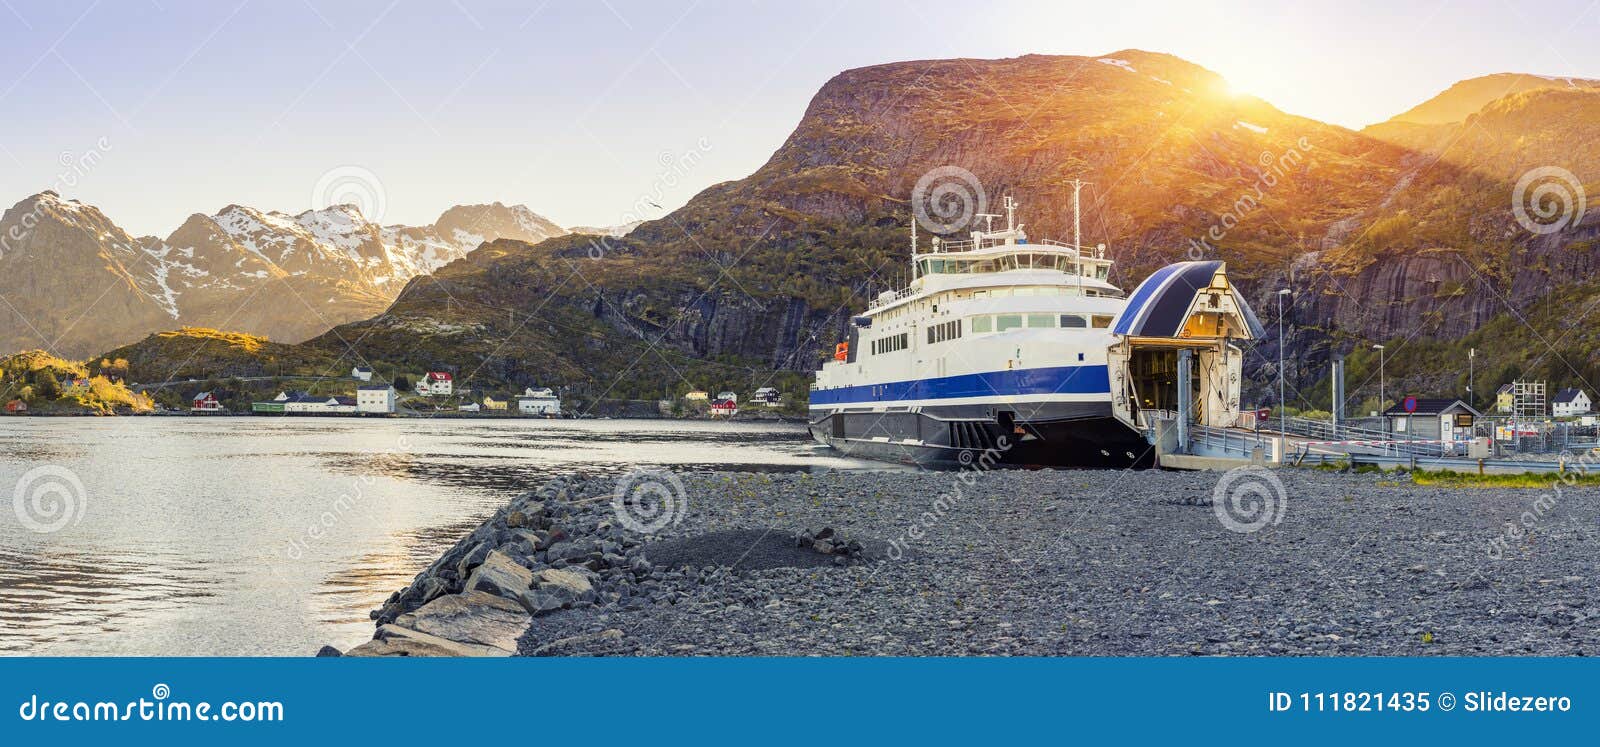 ferry arrival and unloading in moskenes, lofoten islands